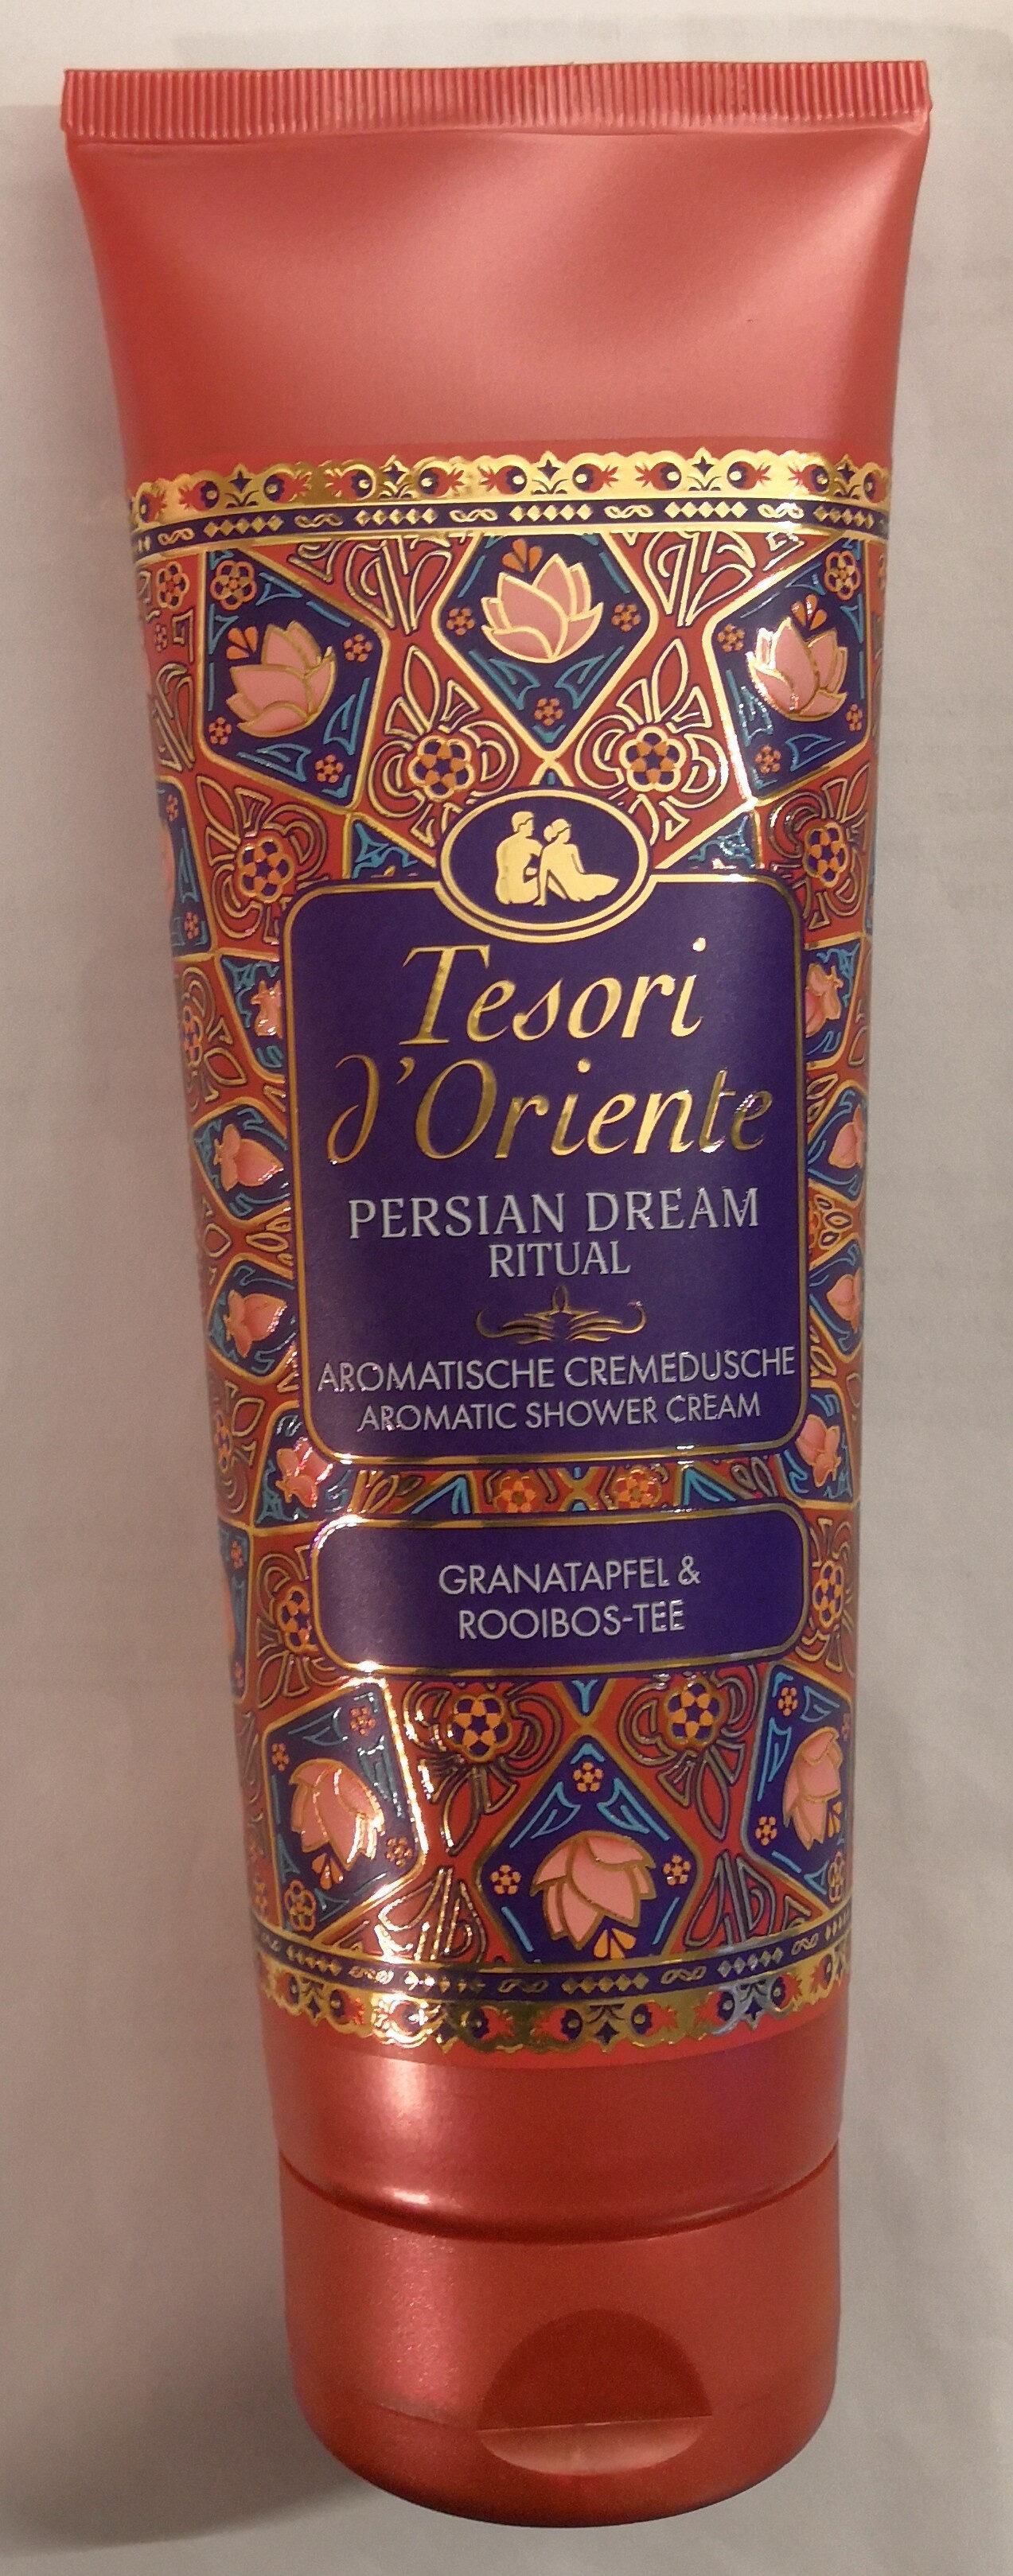 Persian Dream Ritual Granatapfel & Rooibos-Tee - מוצר - de